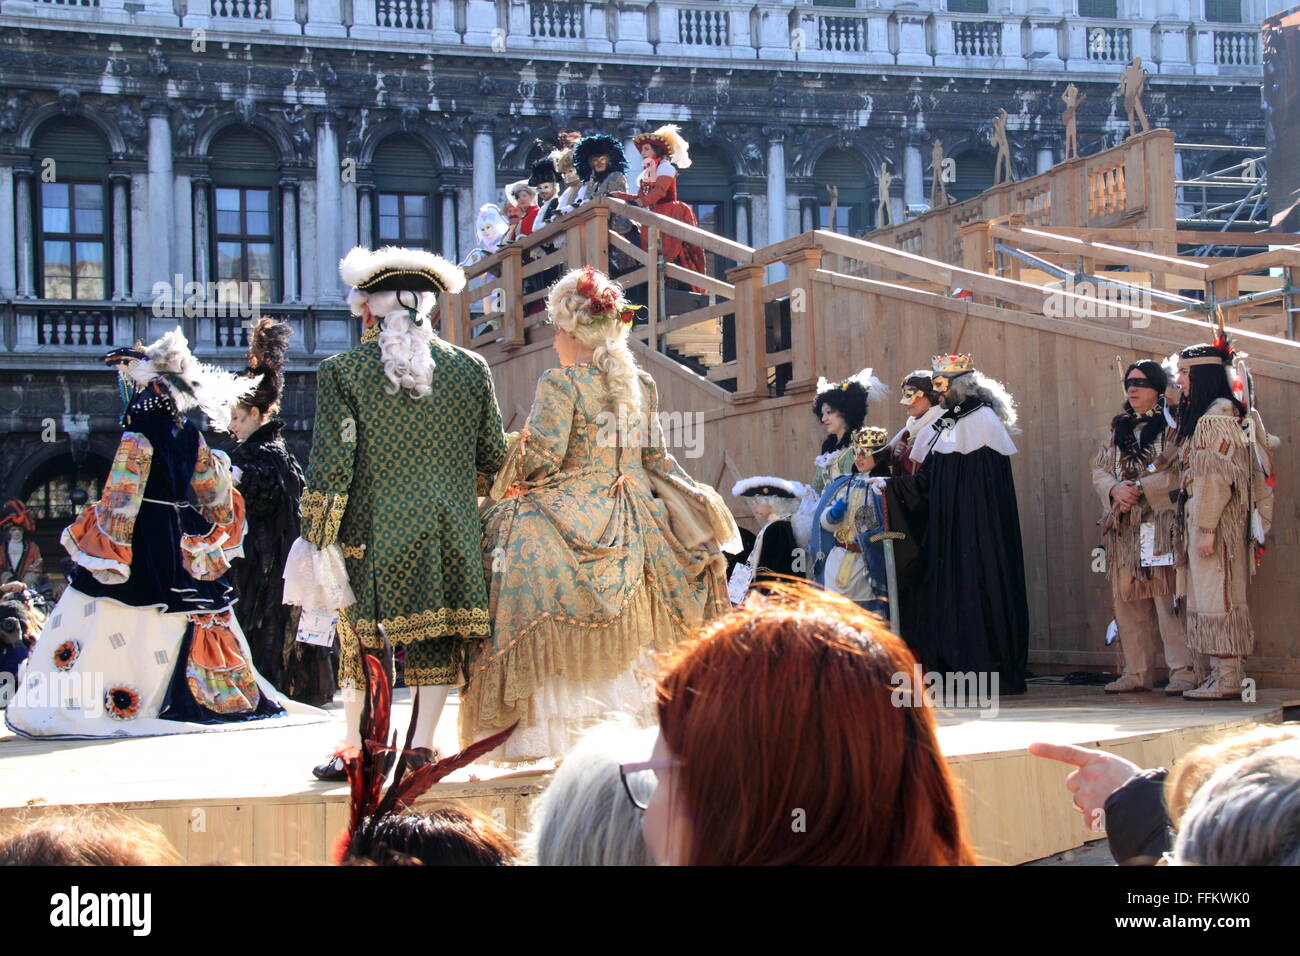 Concours du meilleur costume au Carnaval 2016, la Place Saint-Marc, San Marco, Venise, Vénétie, Italie, Mer Adriatique, de l'Europe Banque D'Images